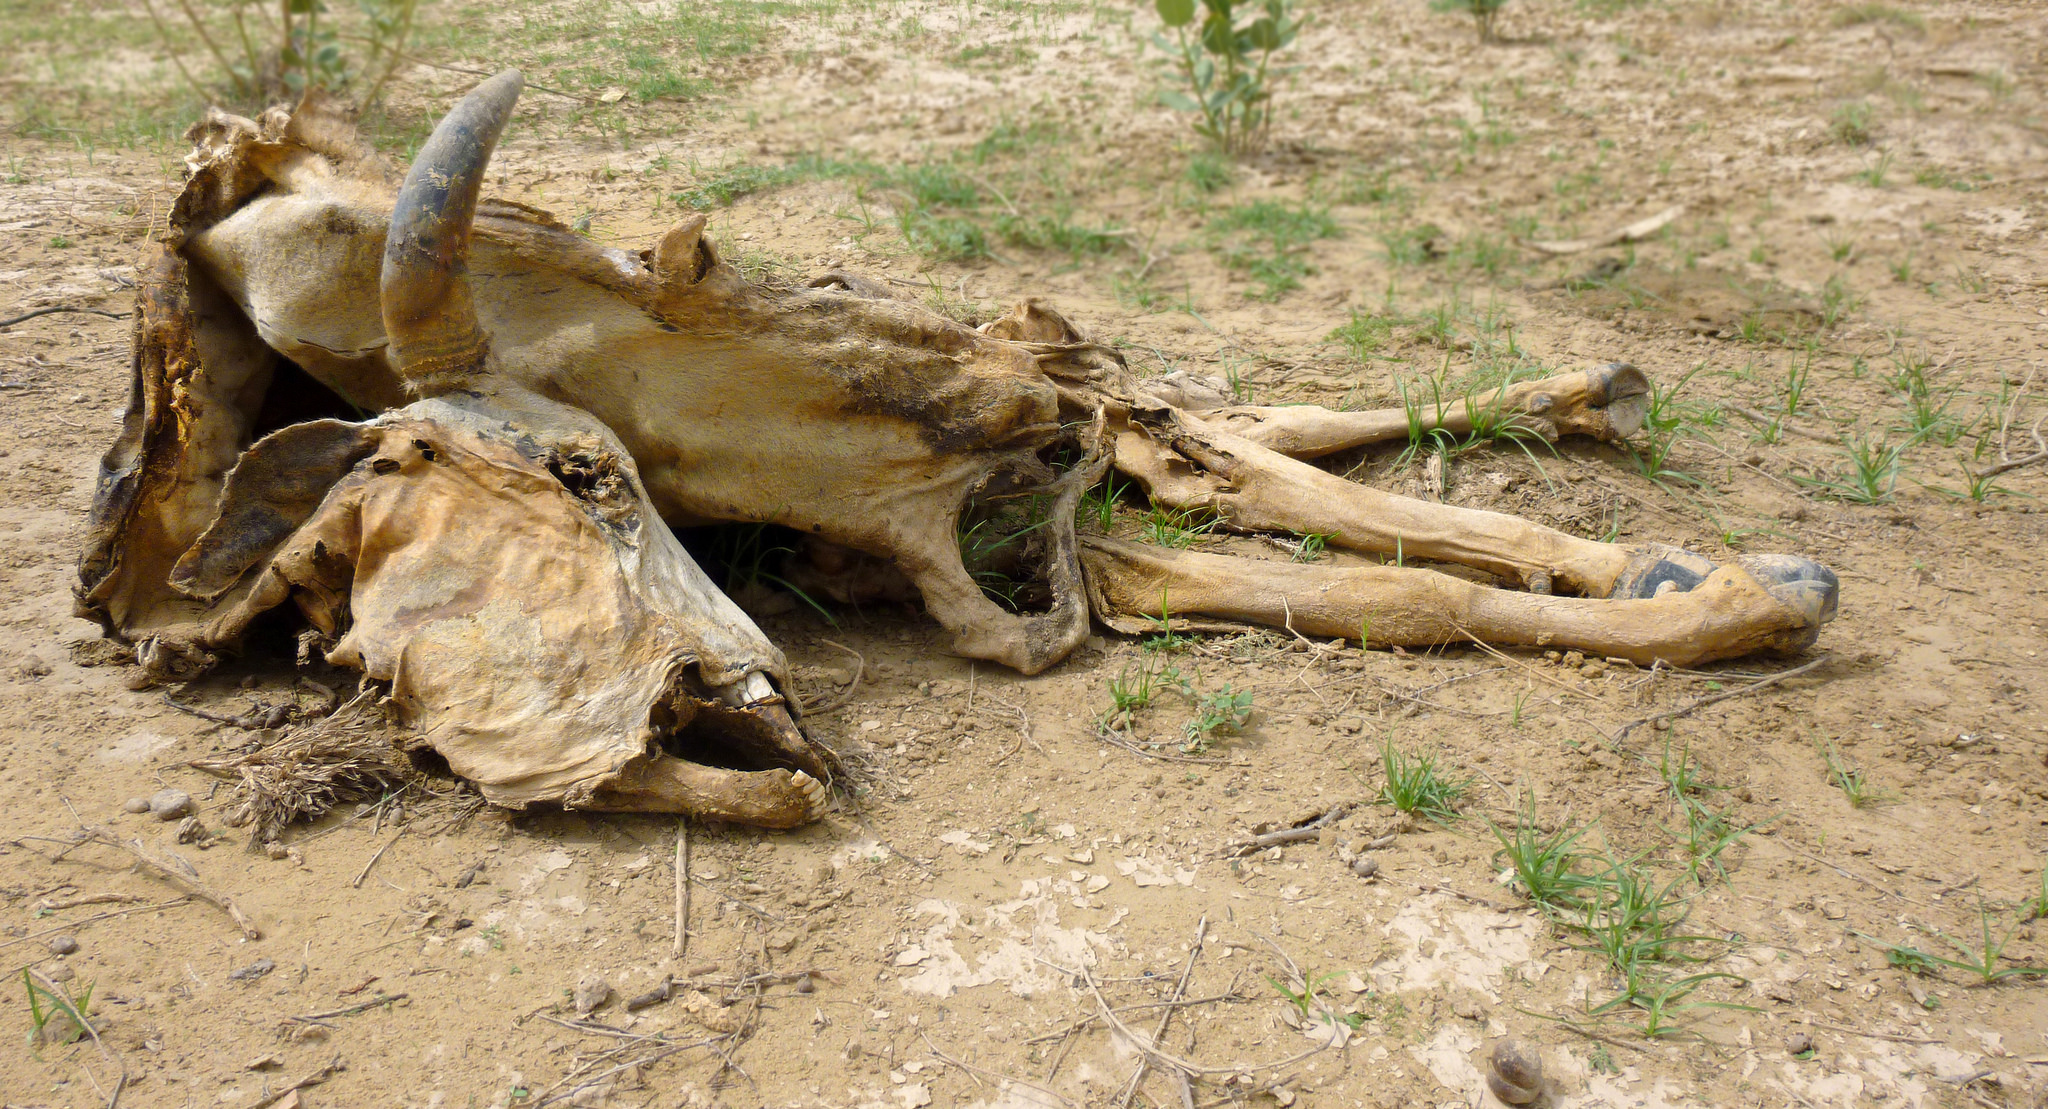 A bovine carcass in India's Thar Desert